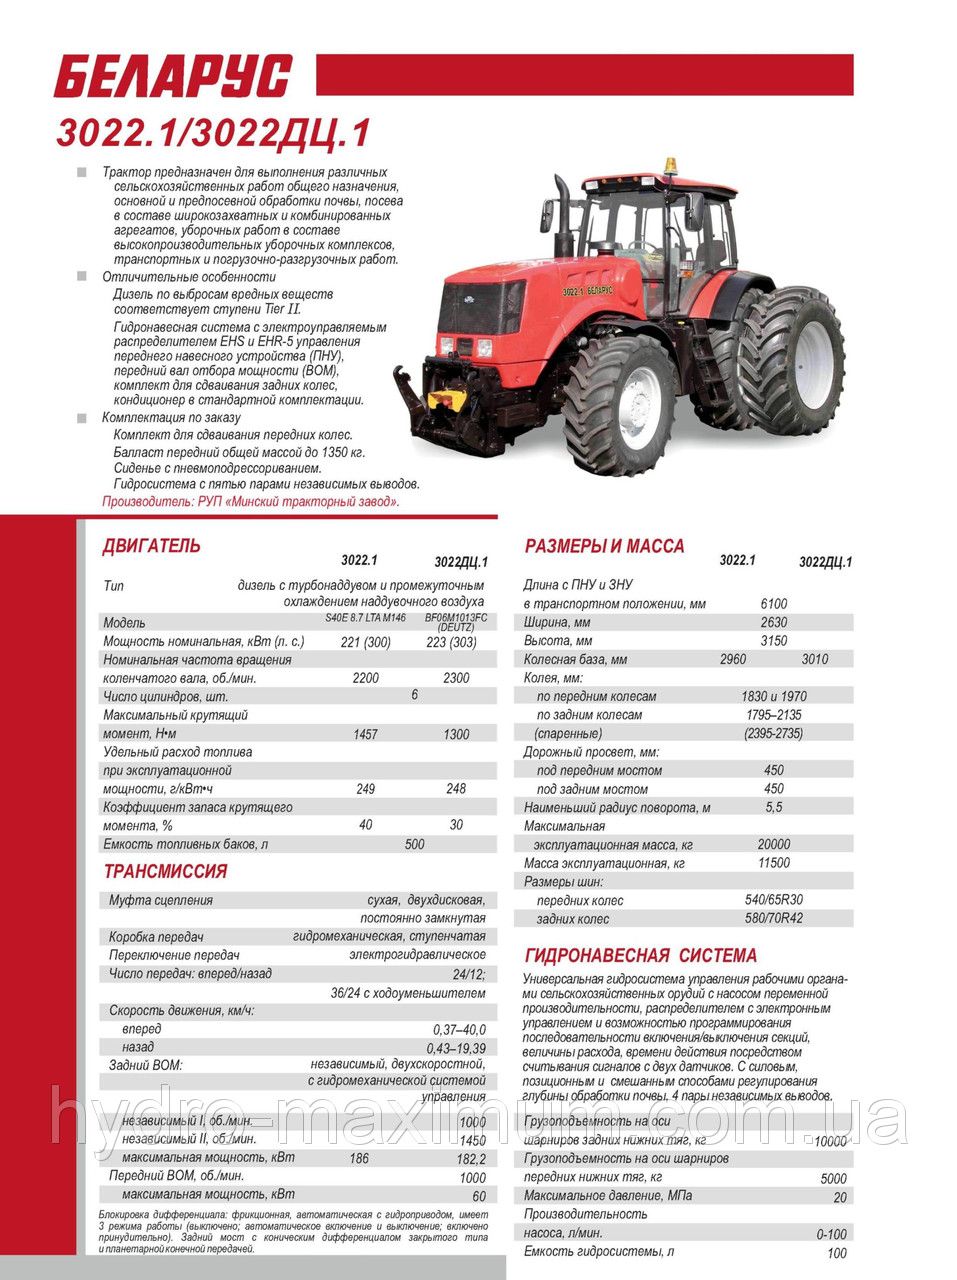 Трактор Беларус 3022 технические характеристики